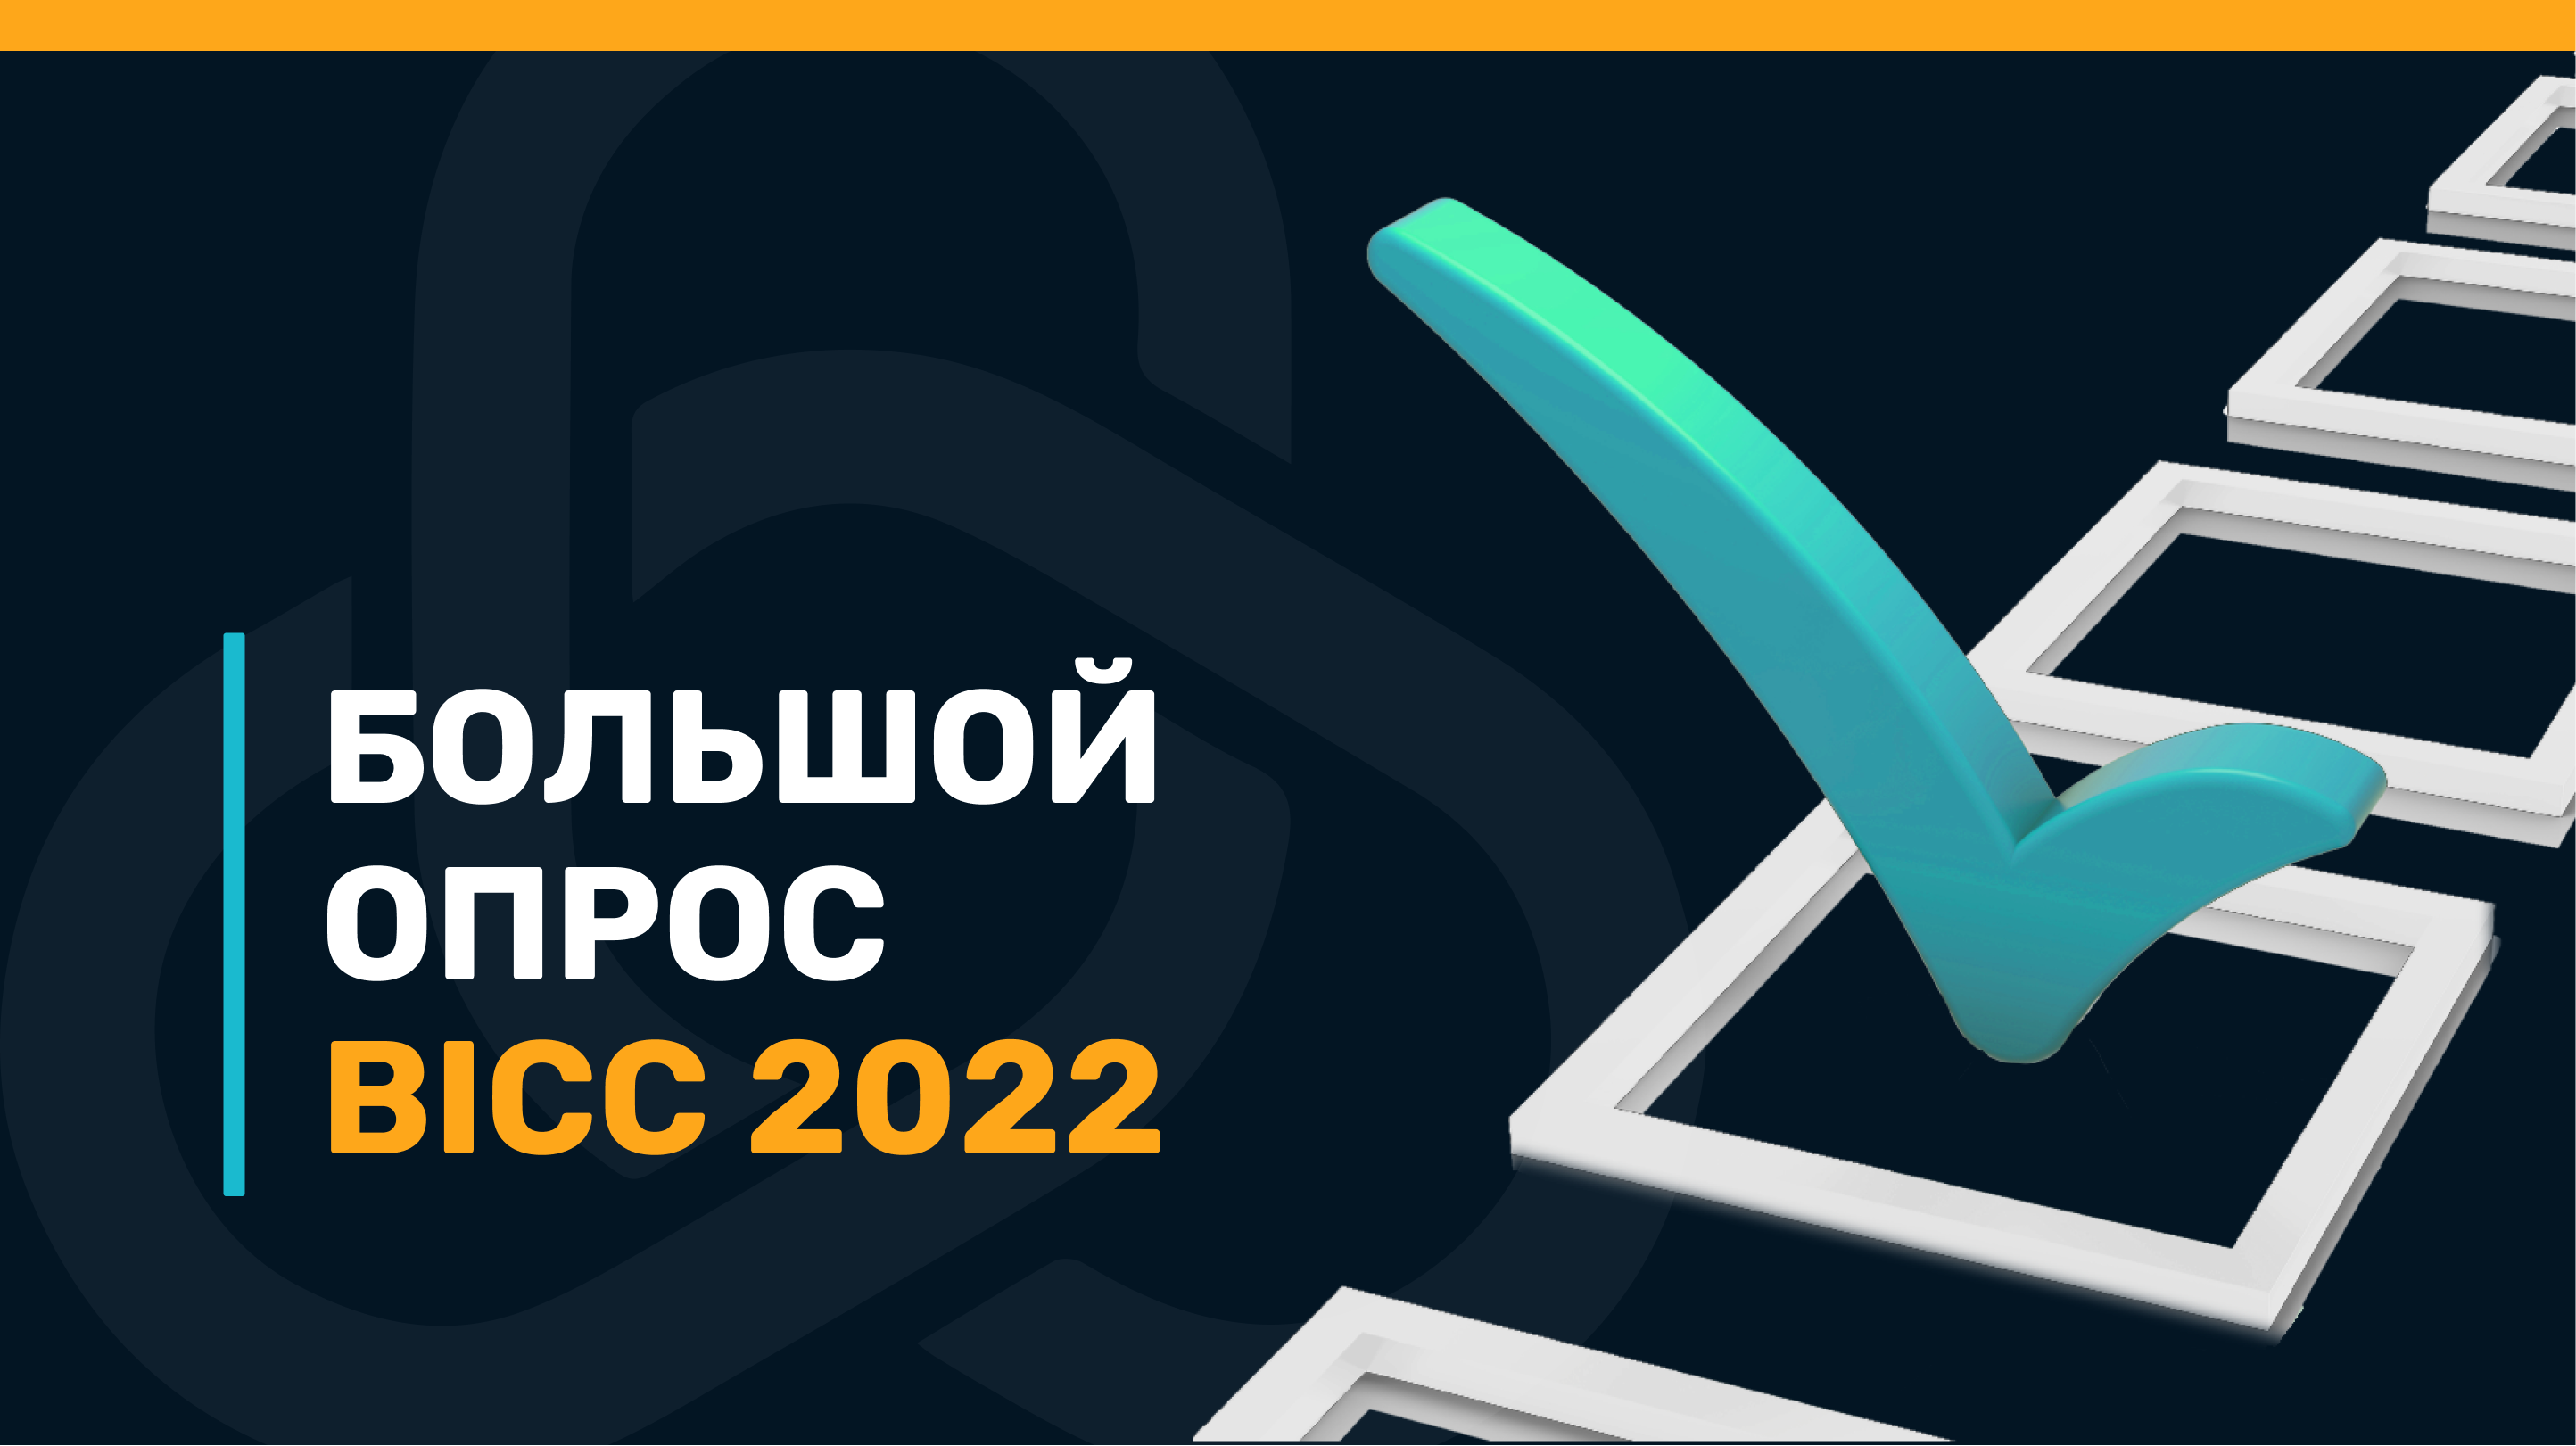 Как 2022 год изменил беларусский ИТ-бизнес? Отраслевой опрос BICC